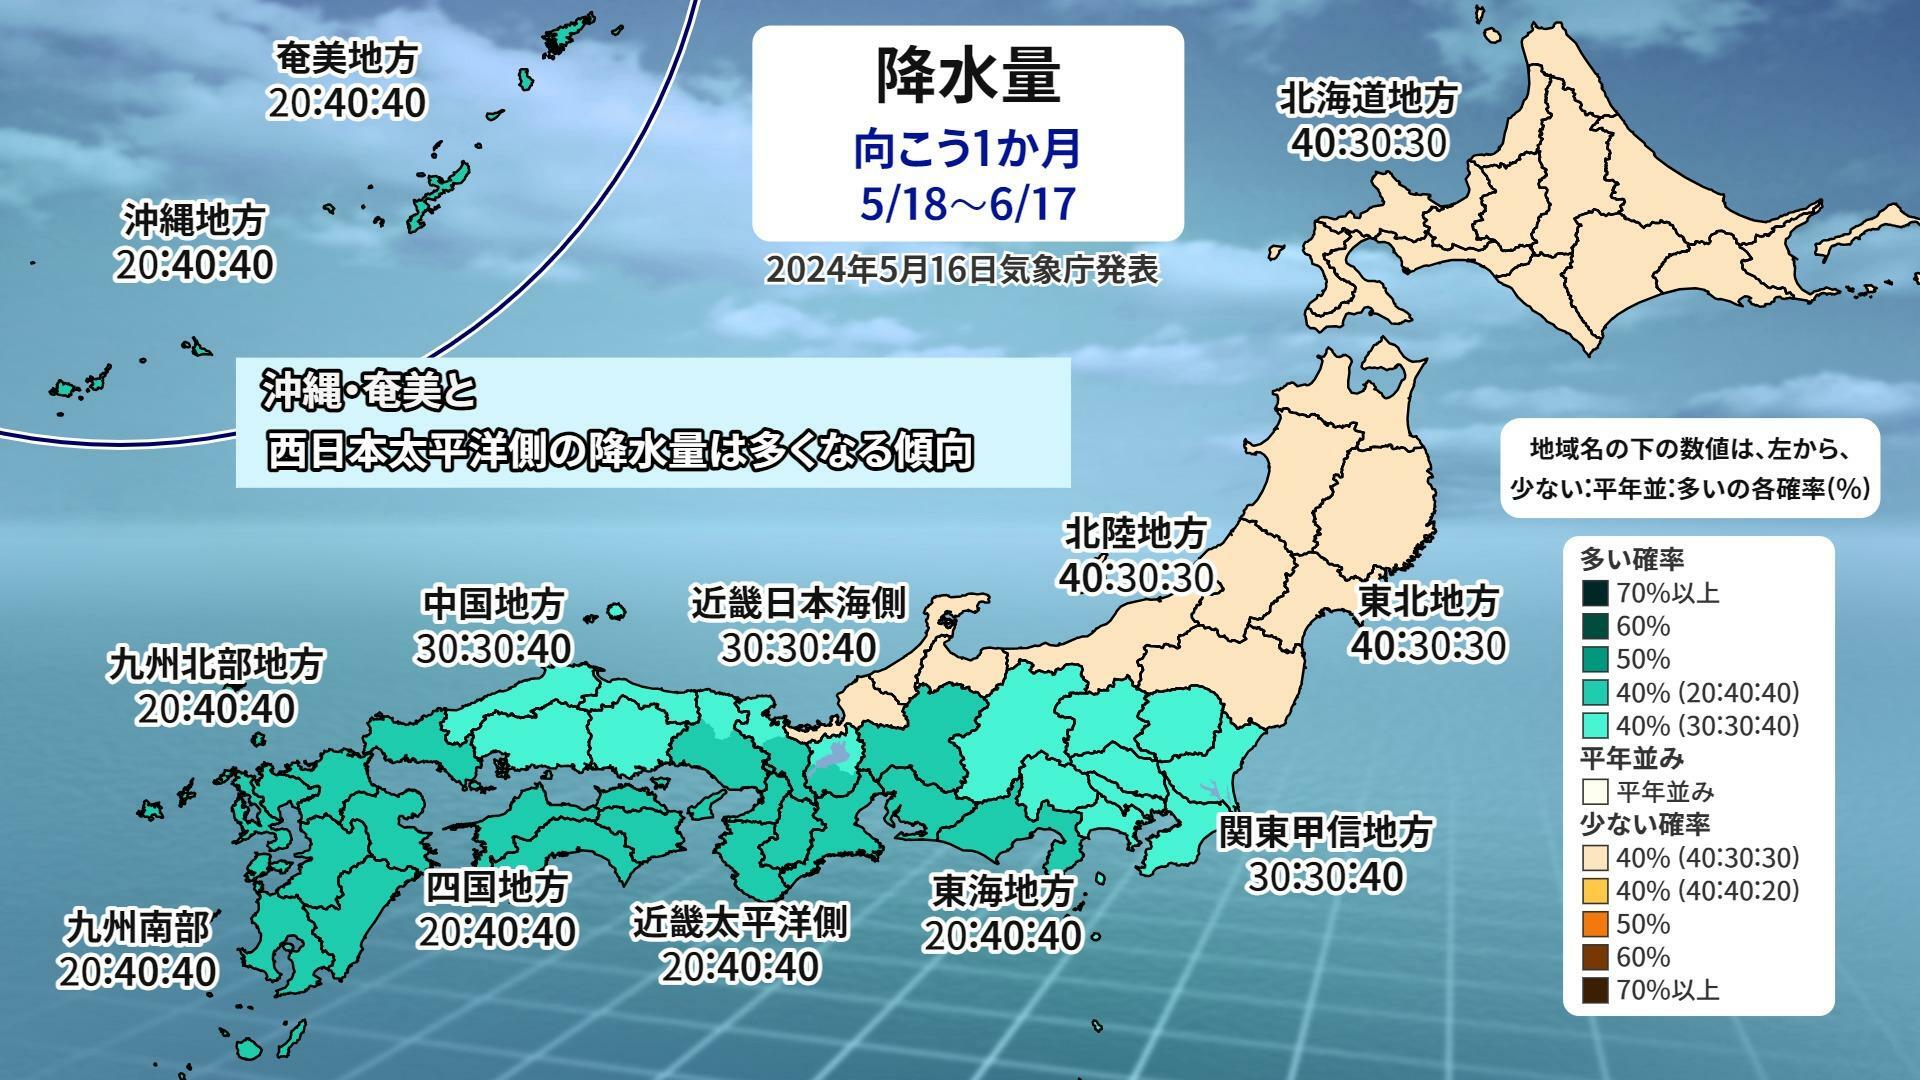 【気象庁1か月予報（5/18～6/17）】降水量予想図、ウェザーマップ作画